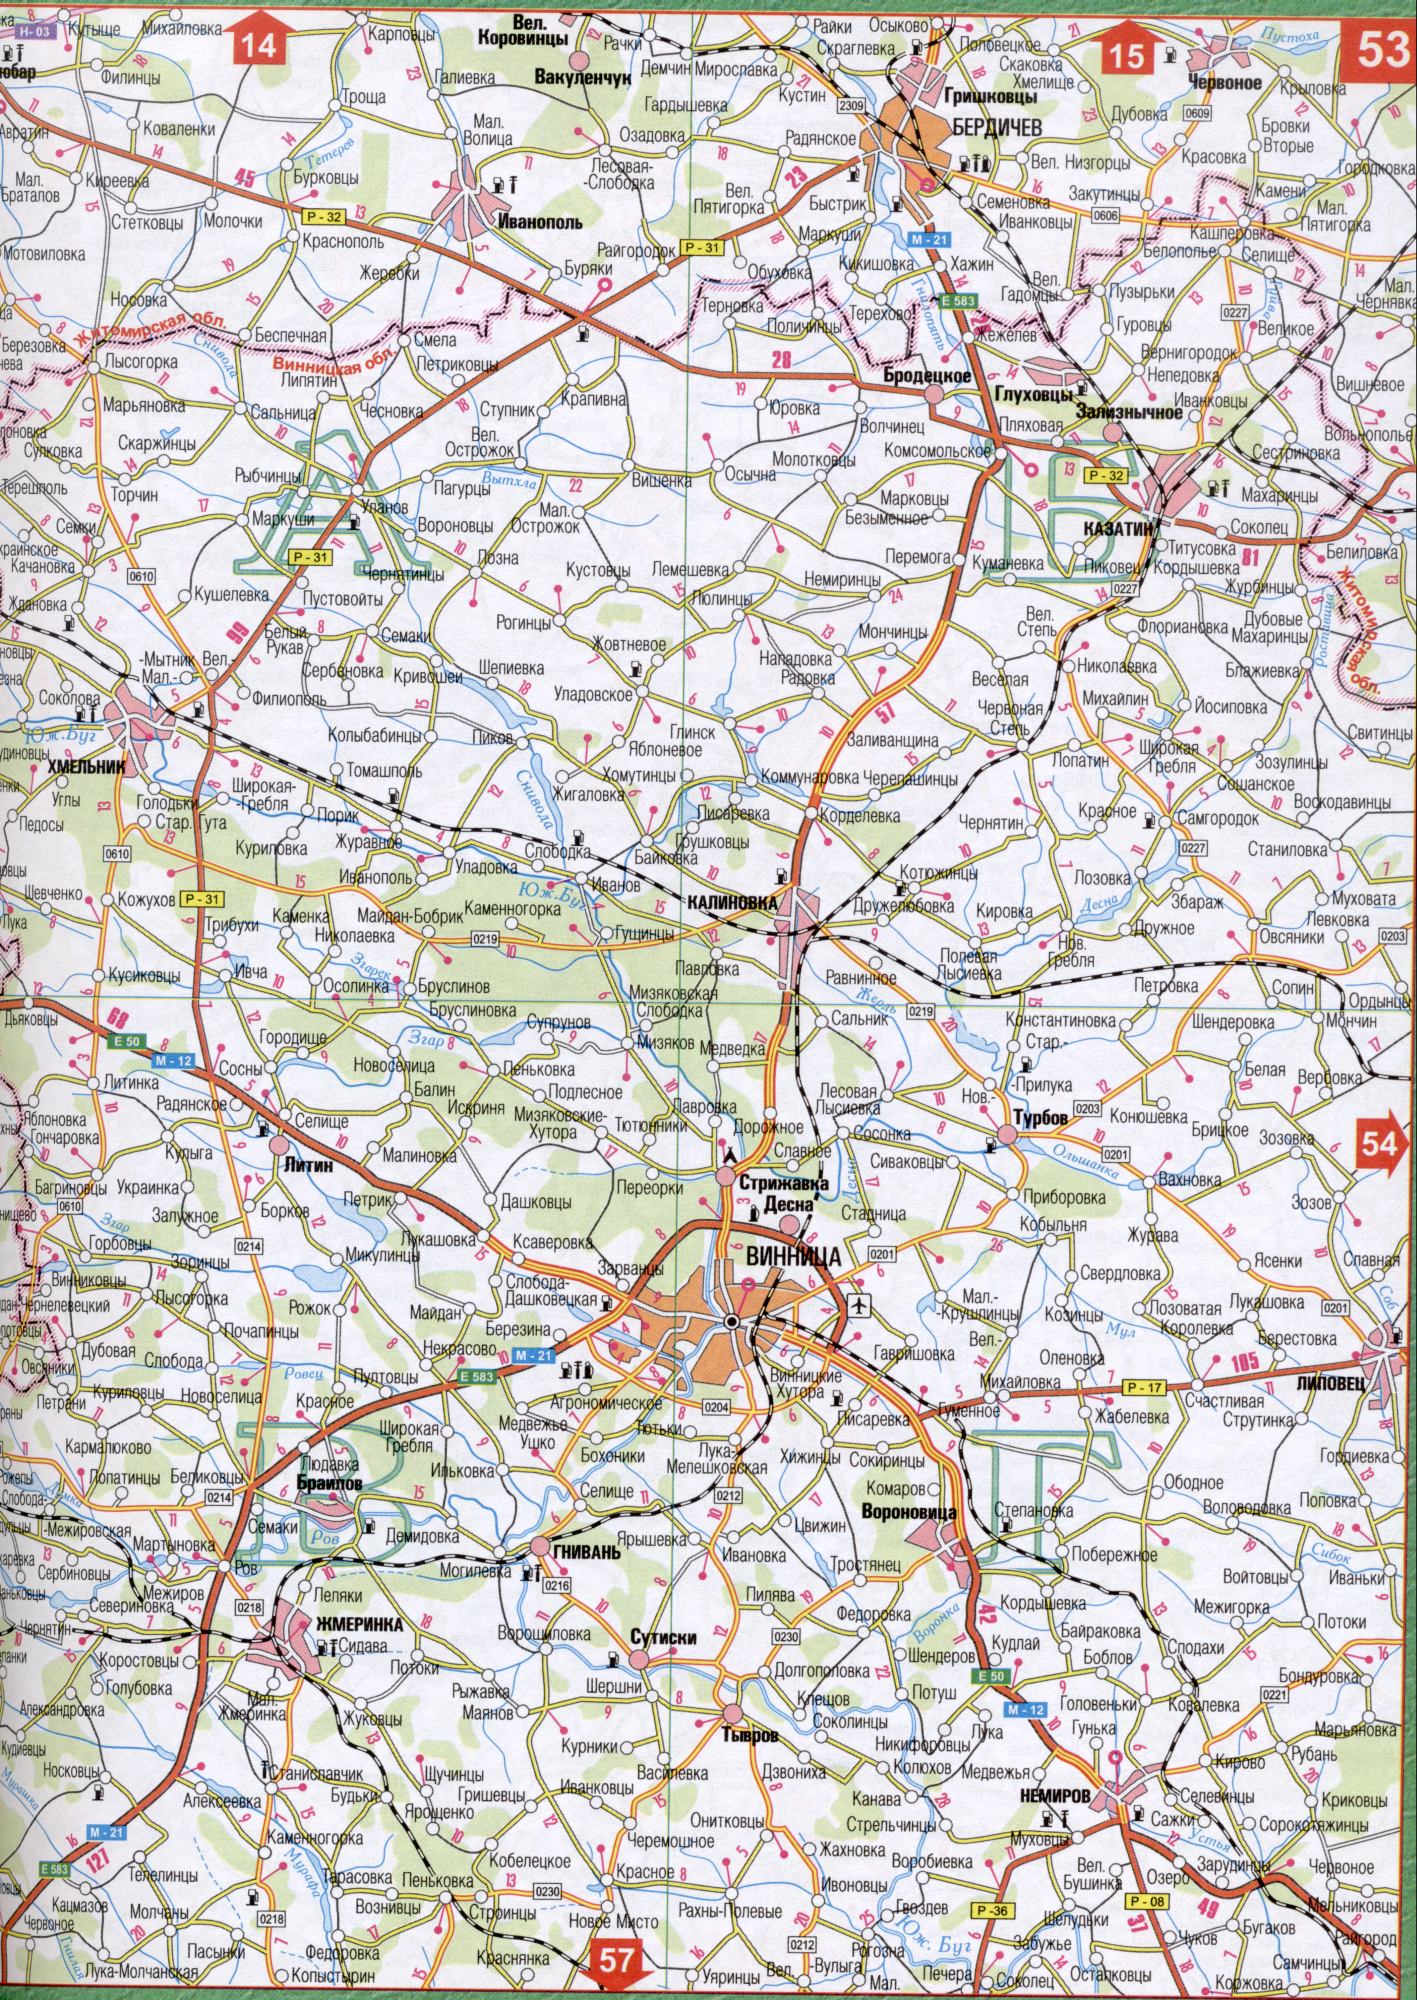 Carte de la région Vinnytsia de l'Ukraine. Une carte détaillée de 1cm échelle: 5000m région Vinnytsia. Gratuit, B0 - Oak Maharintsy, Grand nautique, Bubbles, Berditchev, Tyutyunnik, Raygorod, Ivanopil